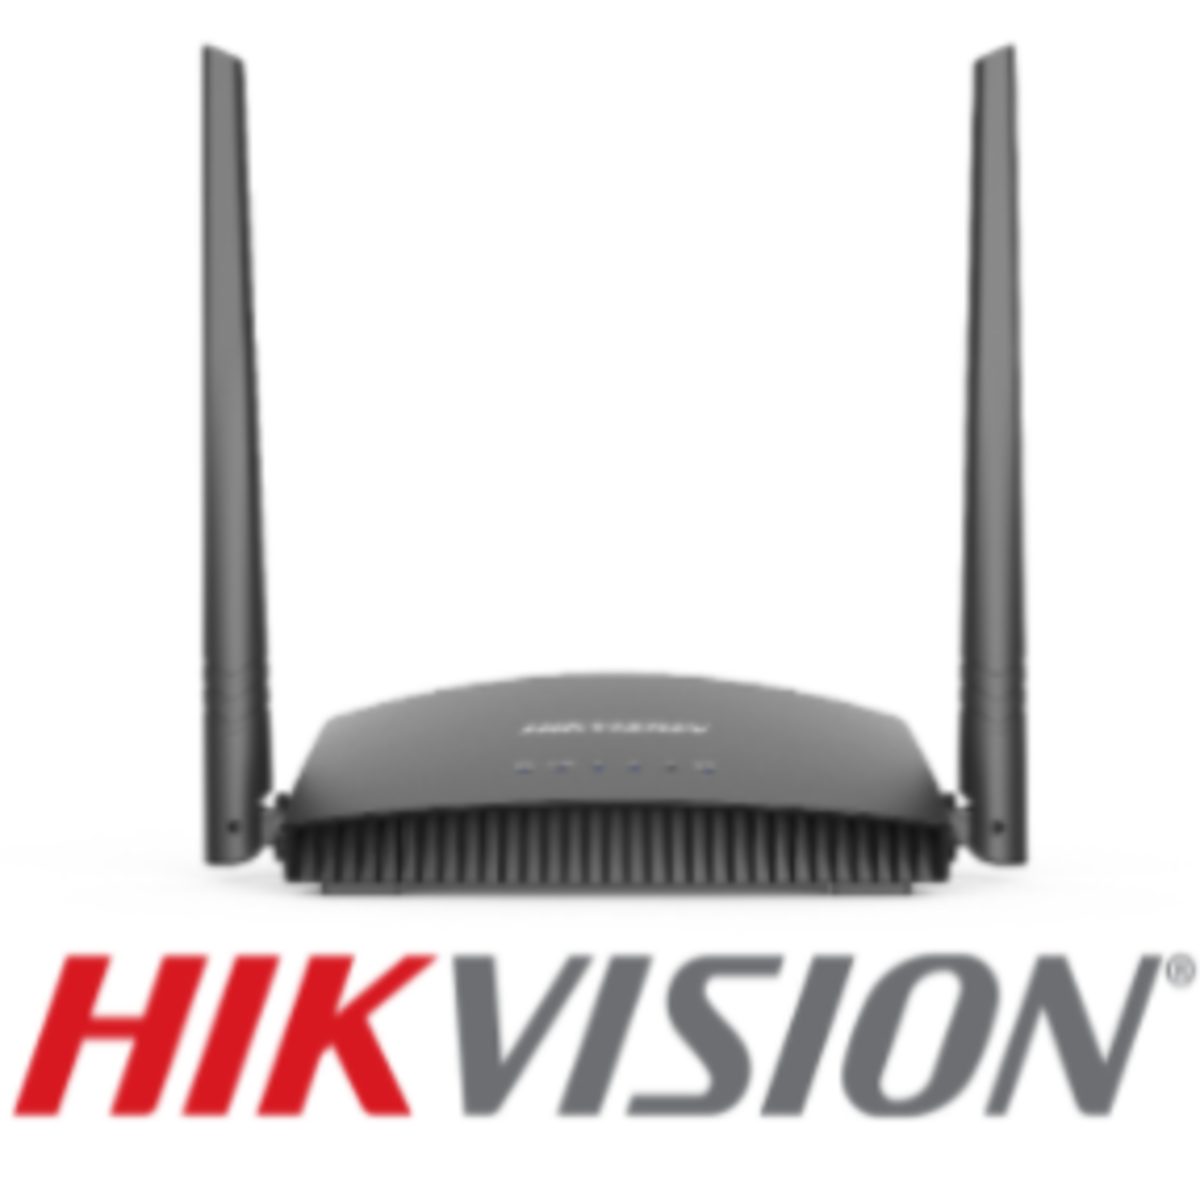 HIKVISION DS-3WR3N / 802.11b/g/n